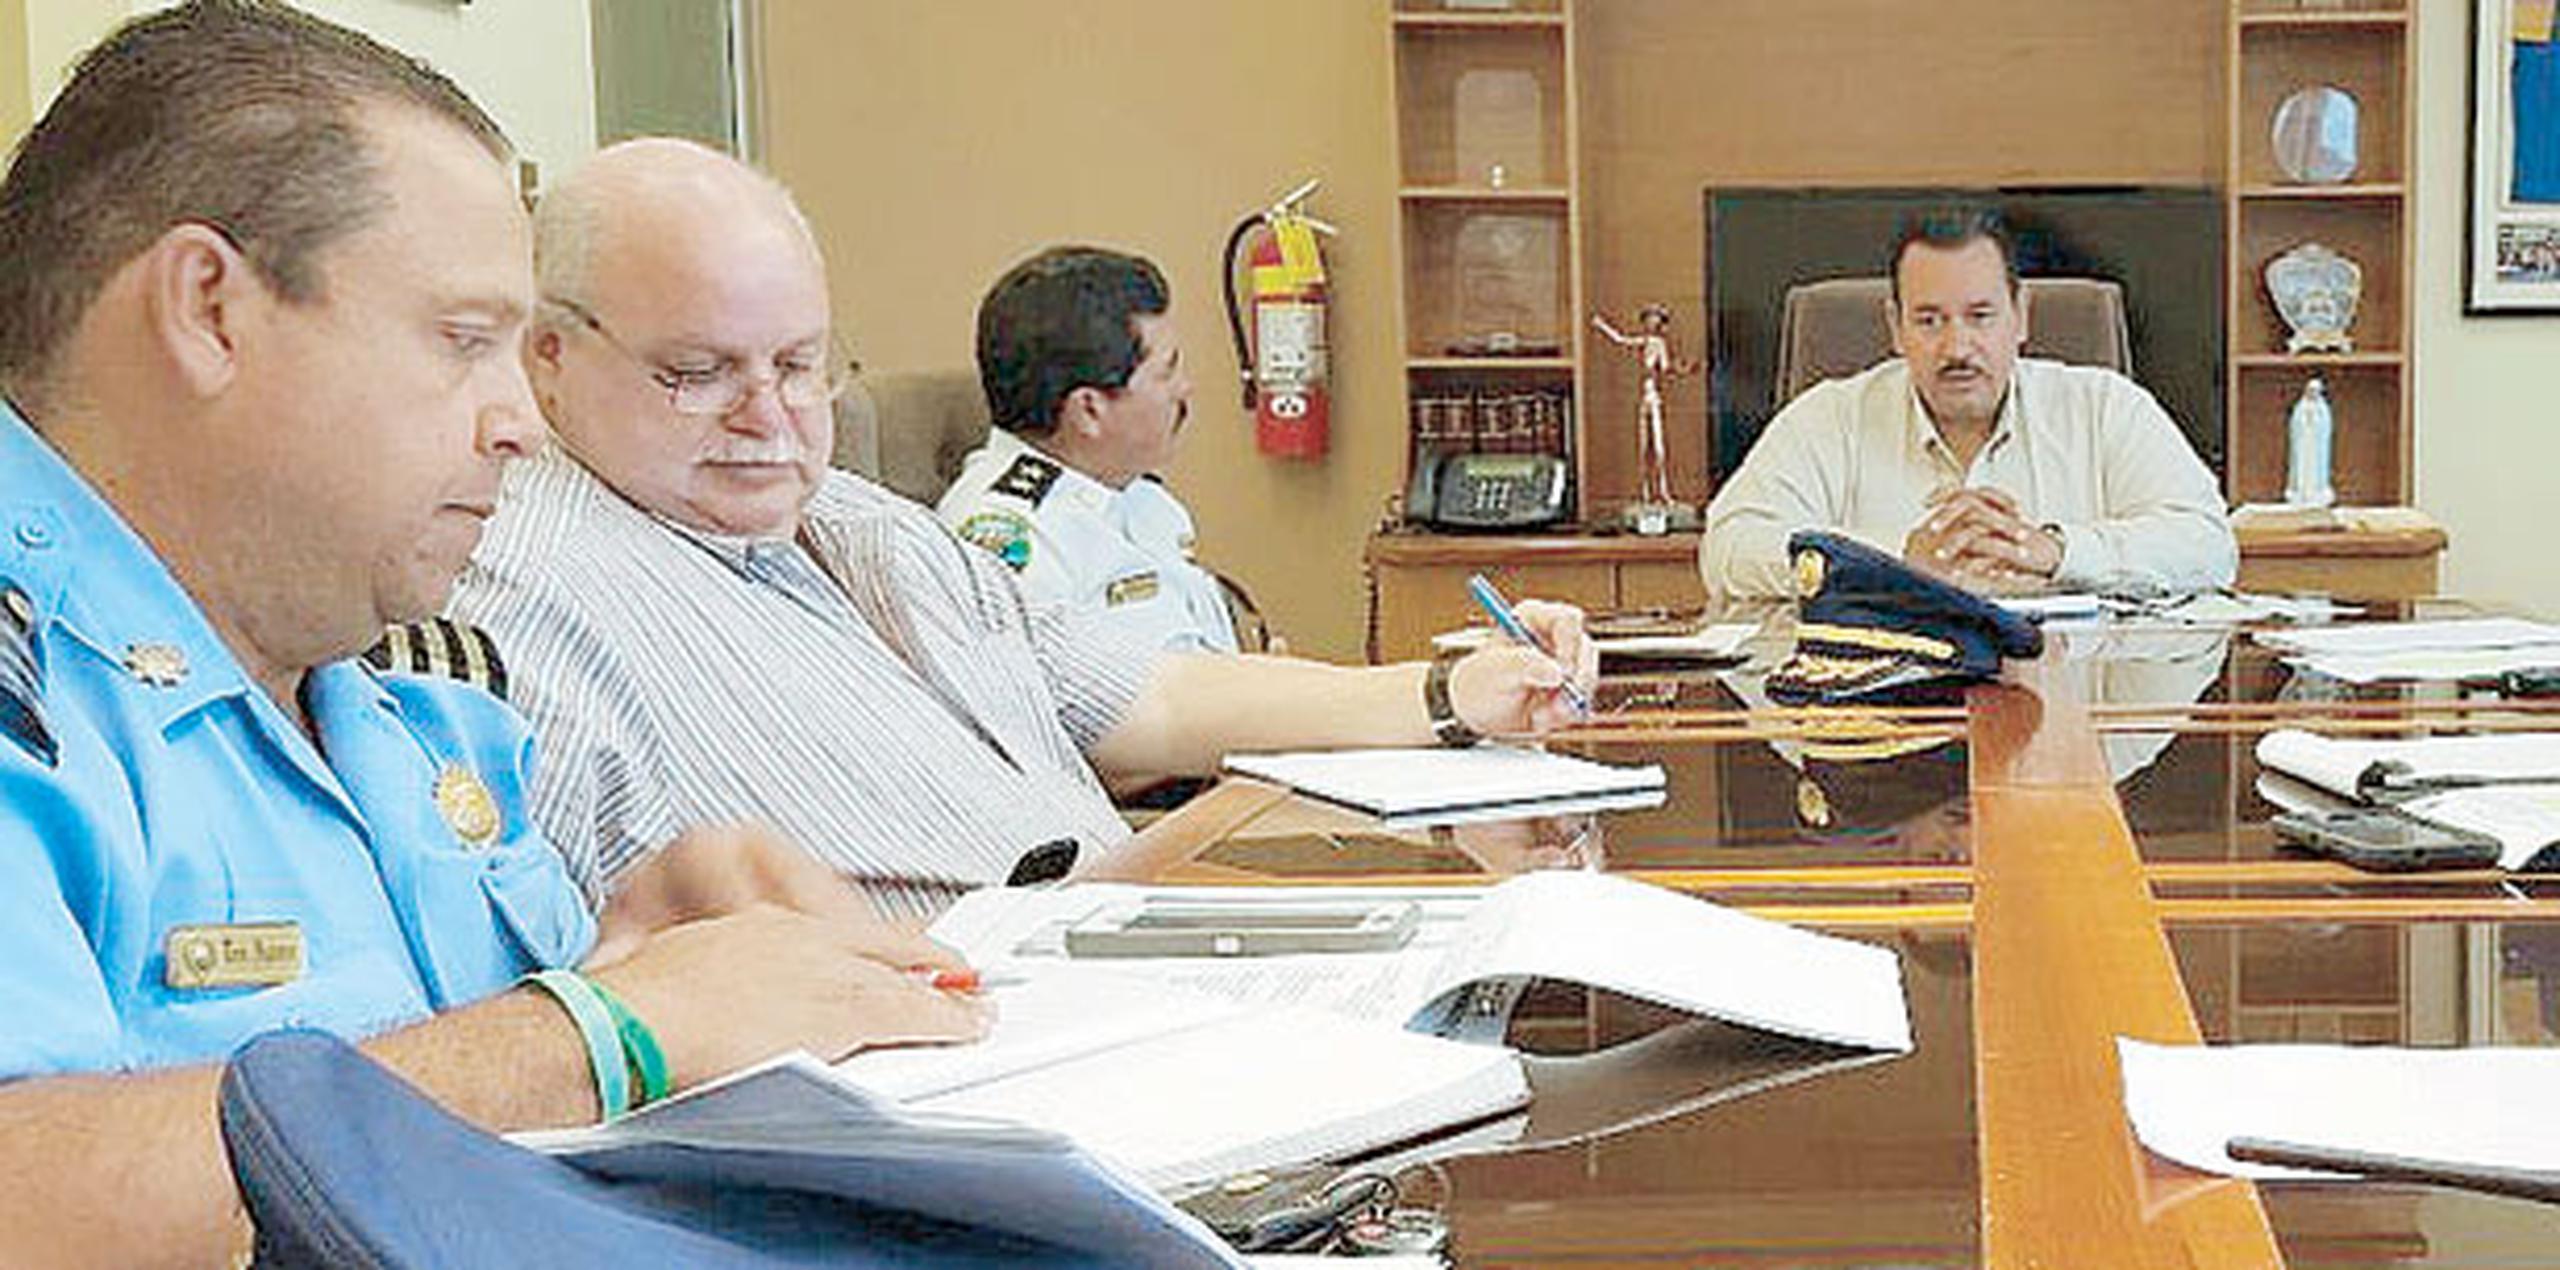 Carrasquillo (al fondo) se reunió con el comandante del distrito, Iván Figueroa, y con el comisionado de la Policía municipal, Héctor Meléndez, para desarrollar el plan de seguridad. (Suministrada)